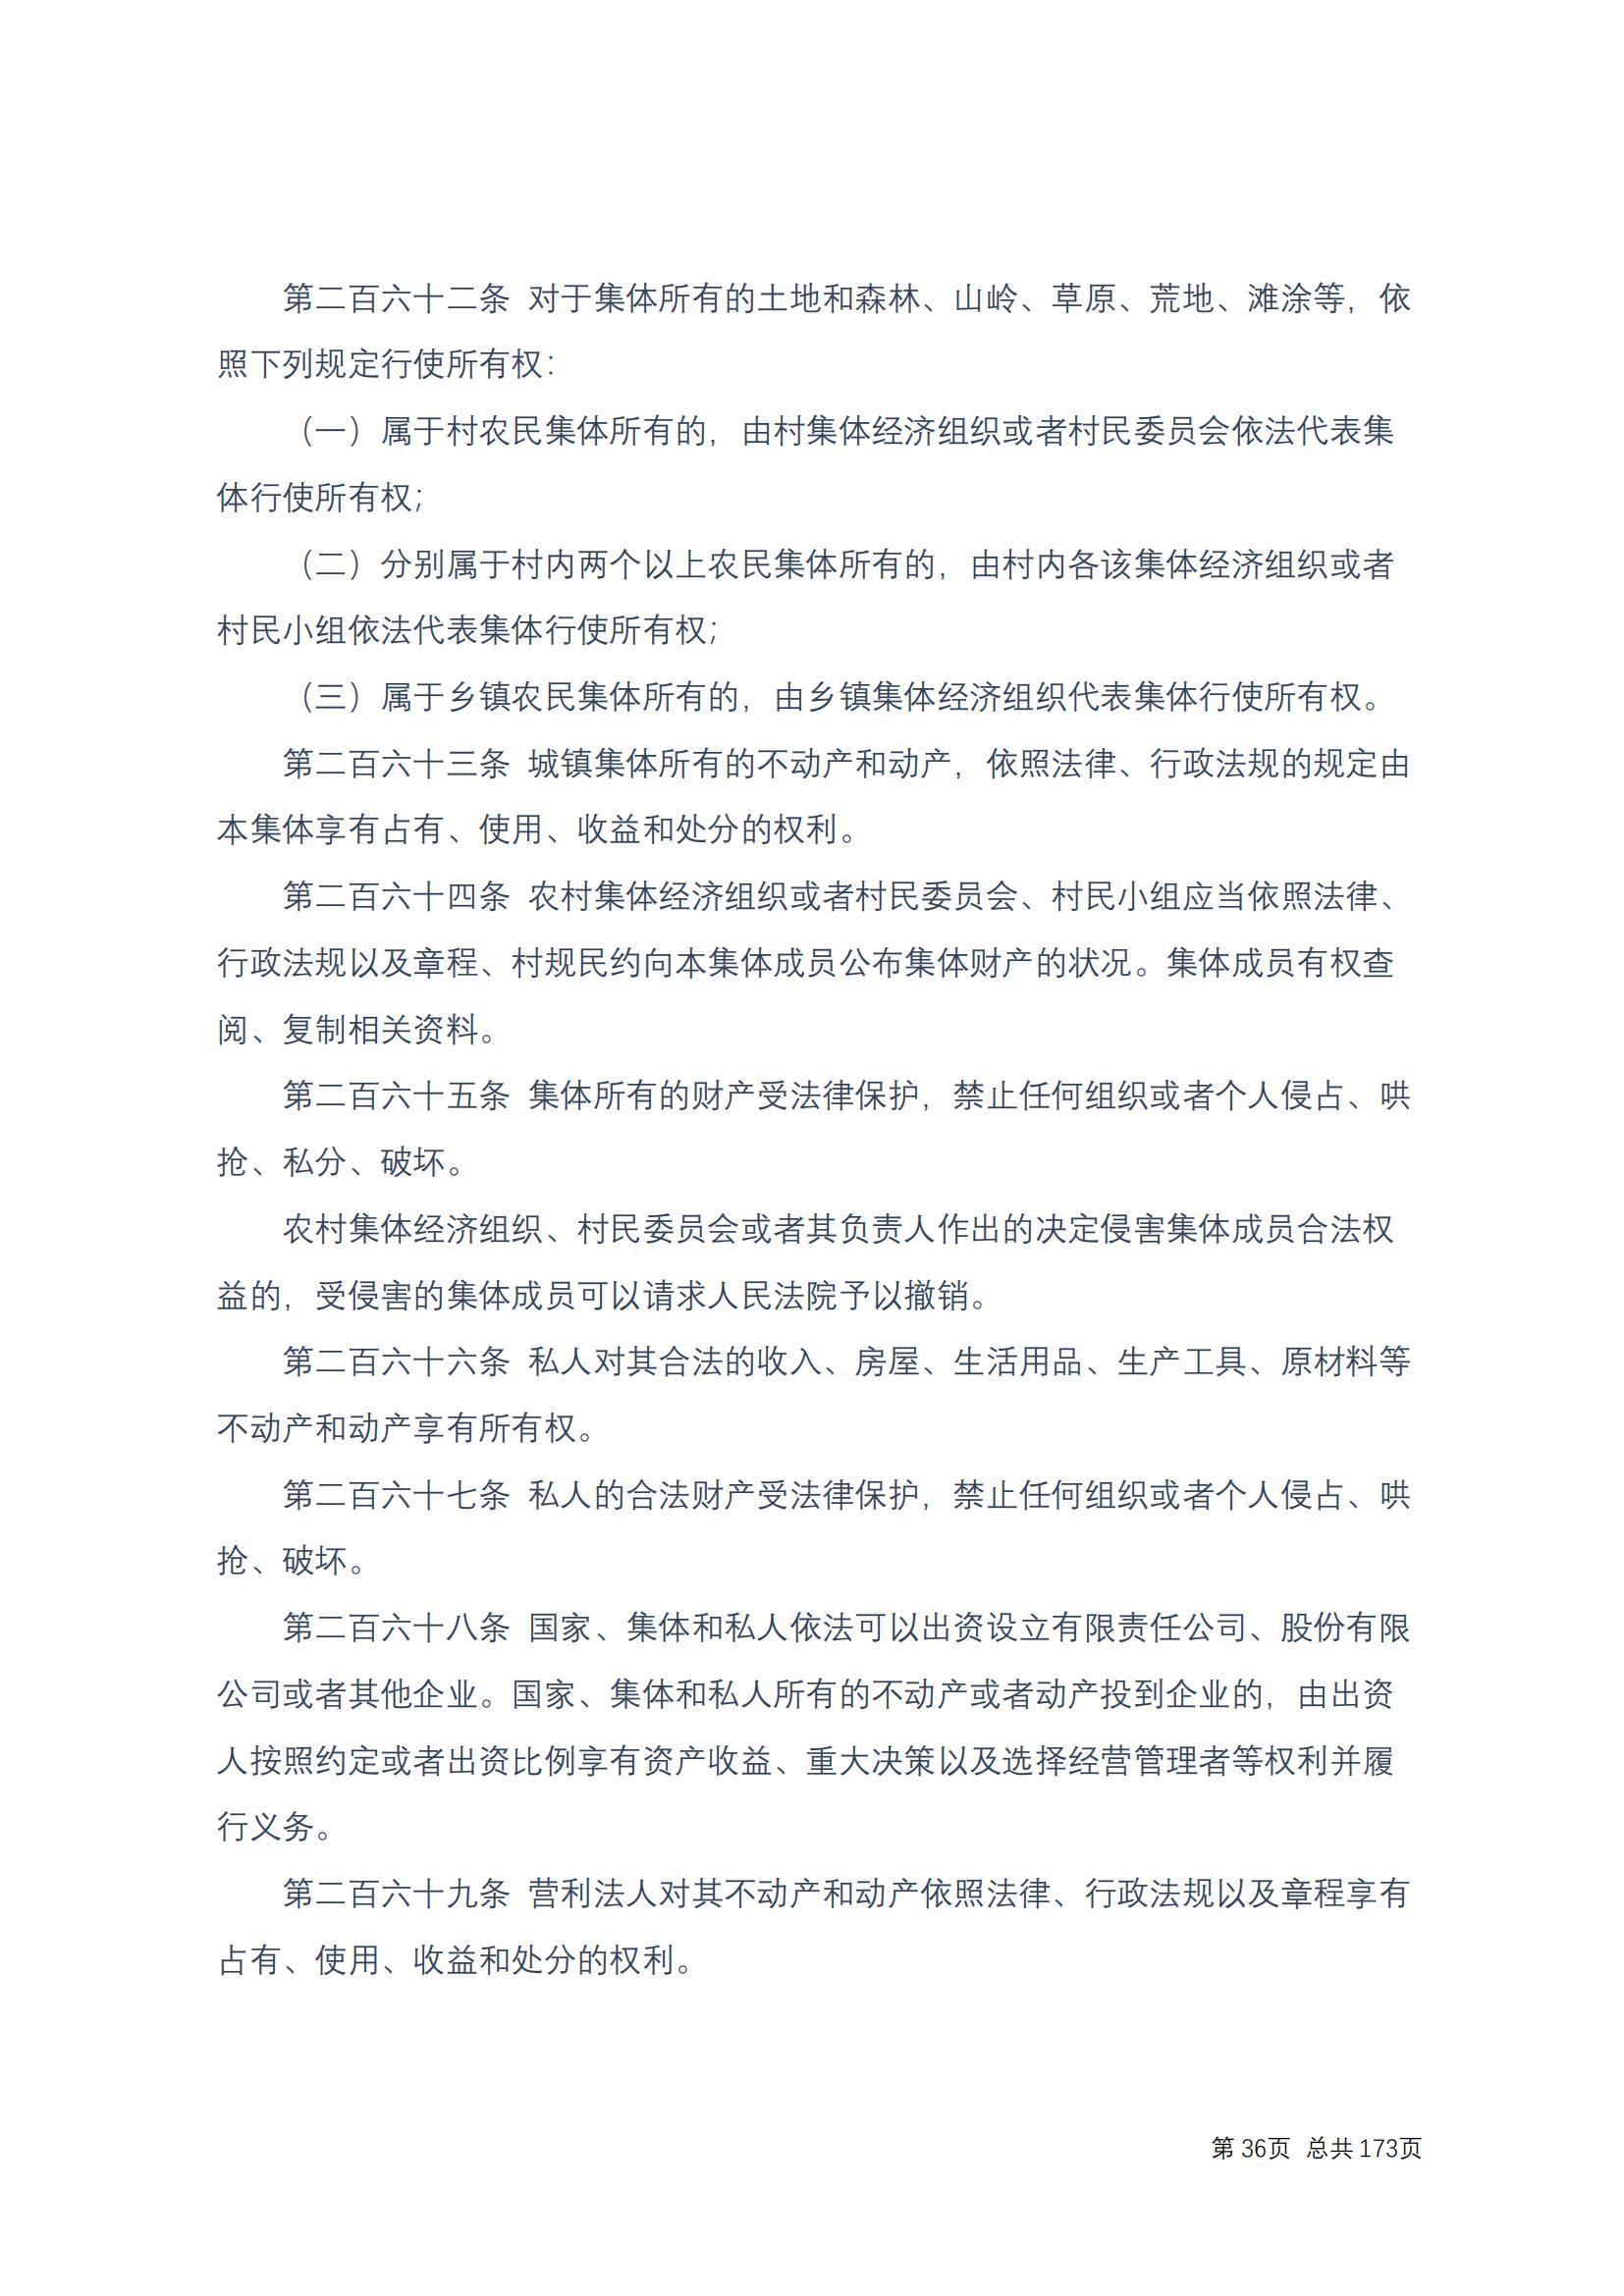 中华人民共和国民法典 修改过_35